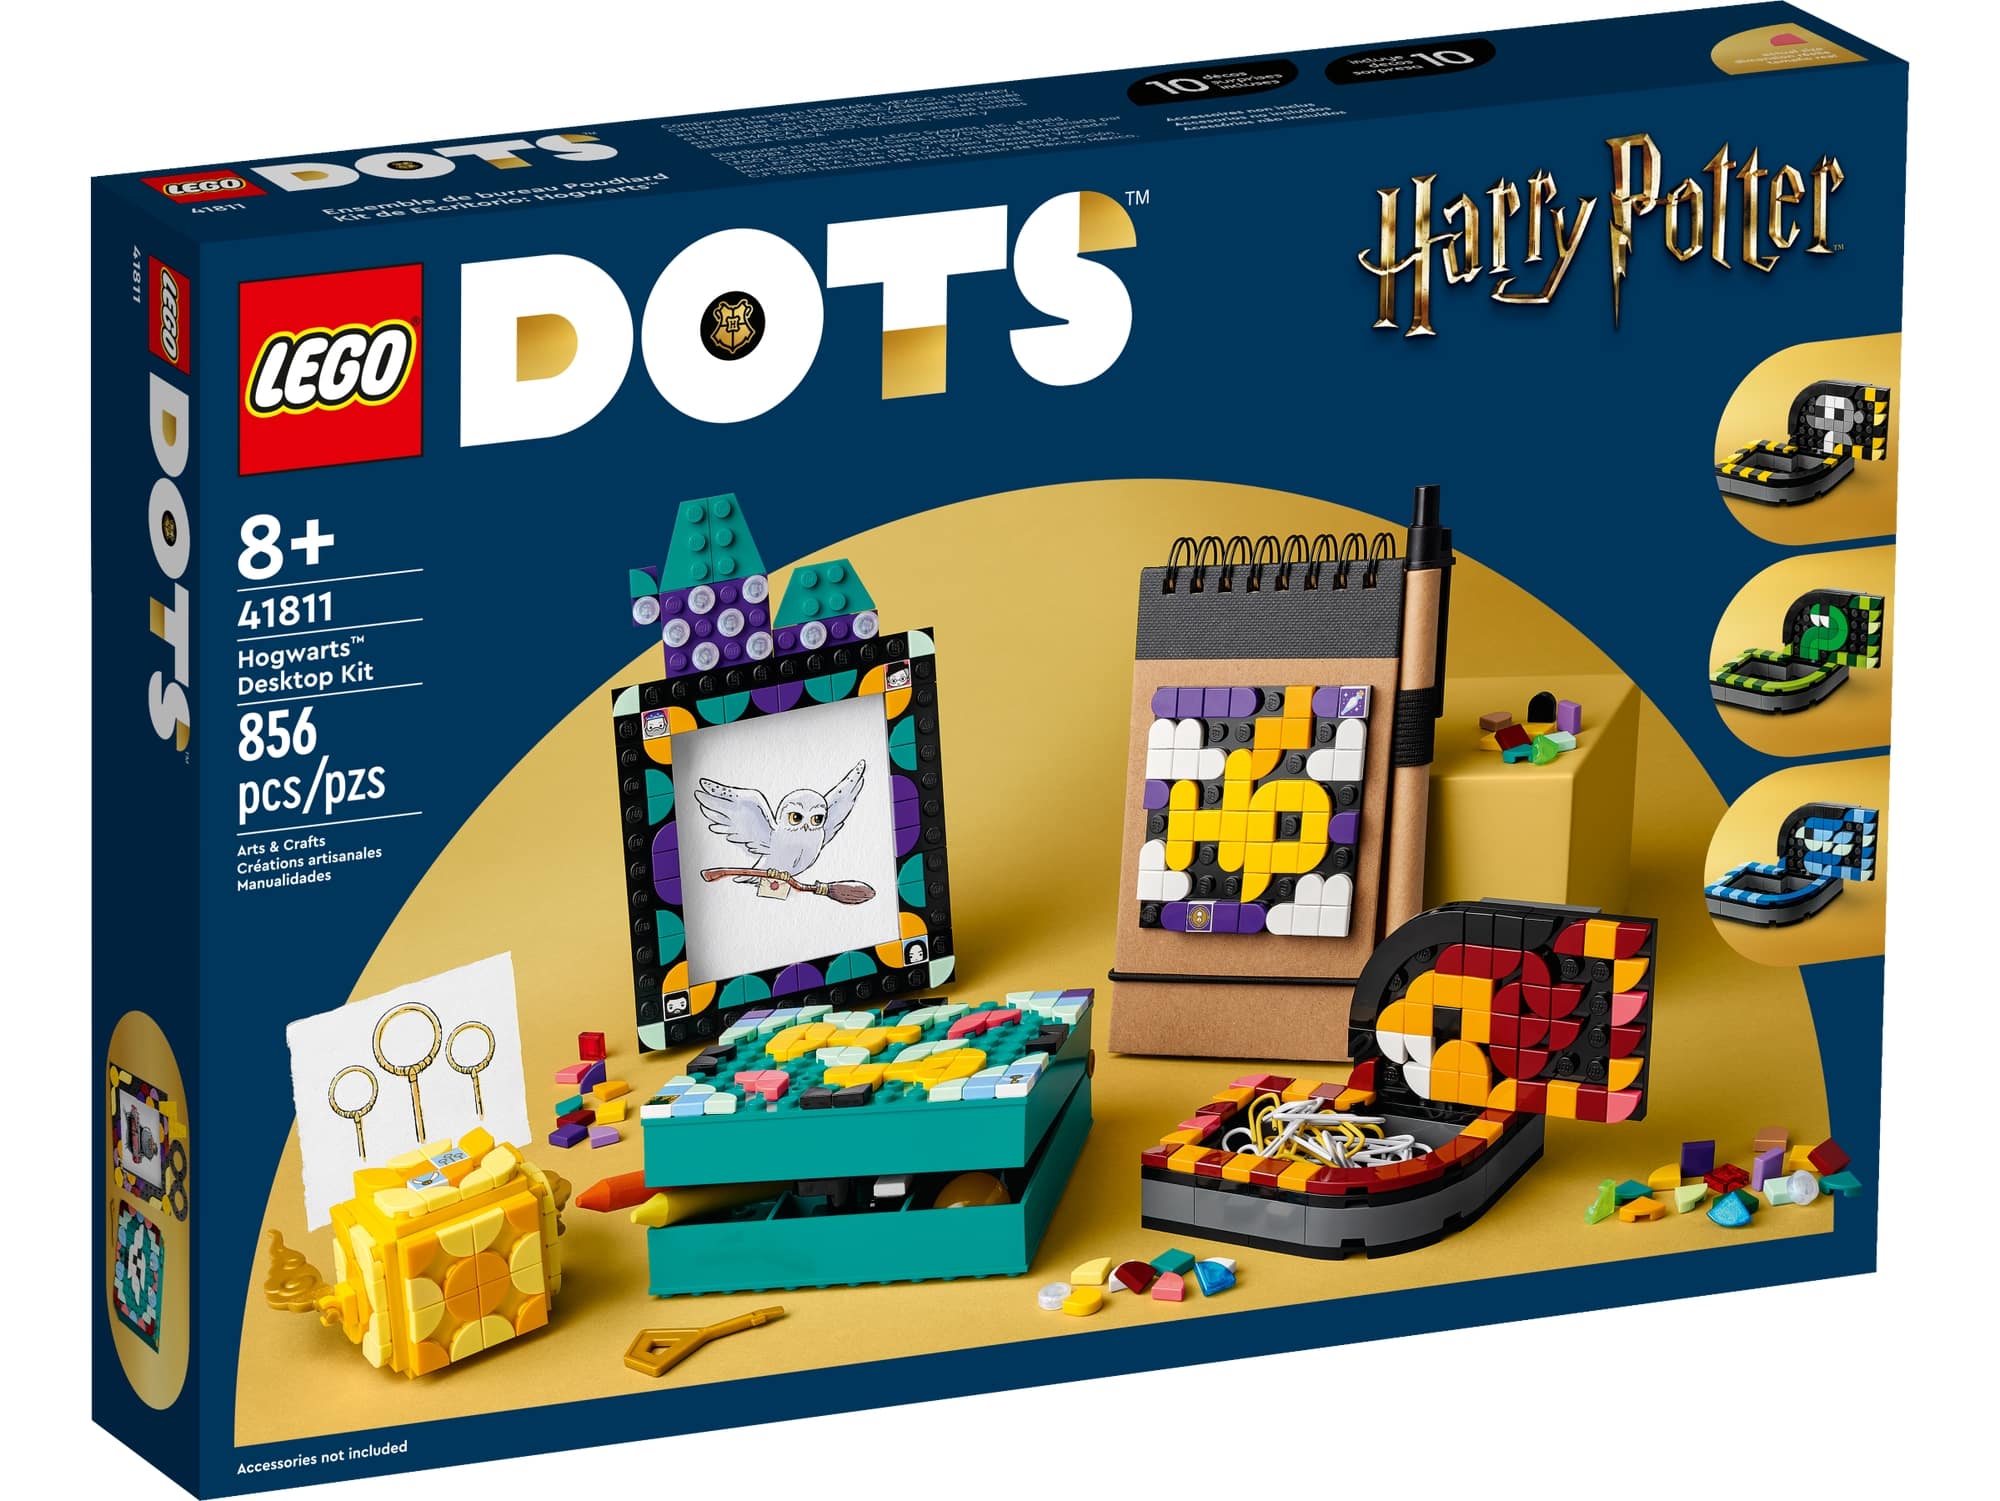 LEGO Dots 41811 Hogwarts Schreibtisch Set 2